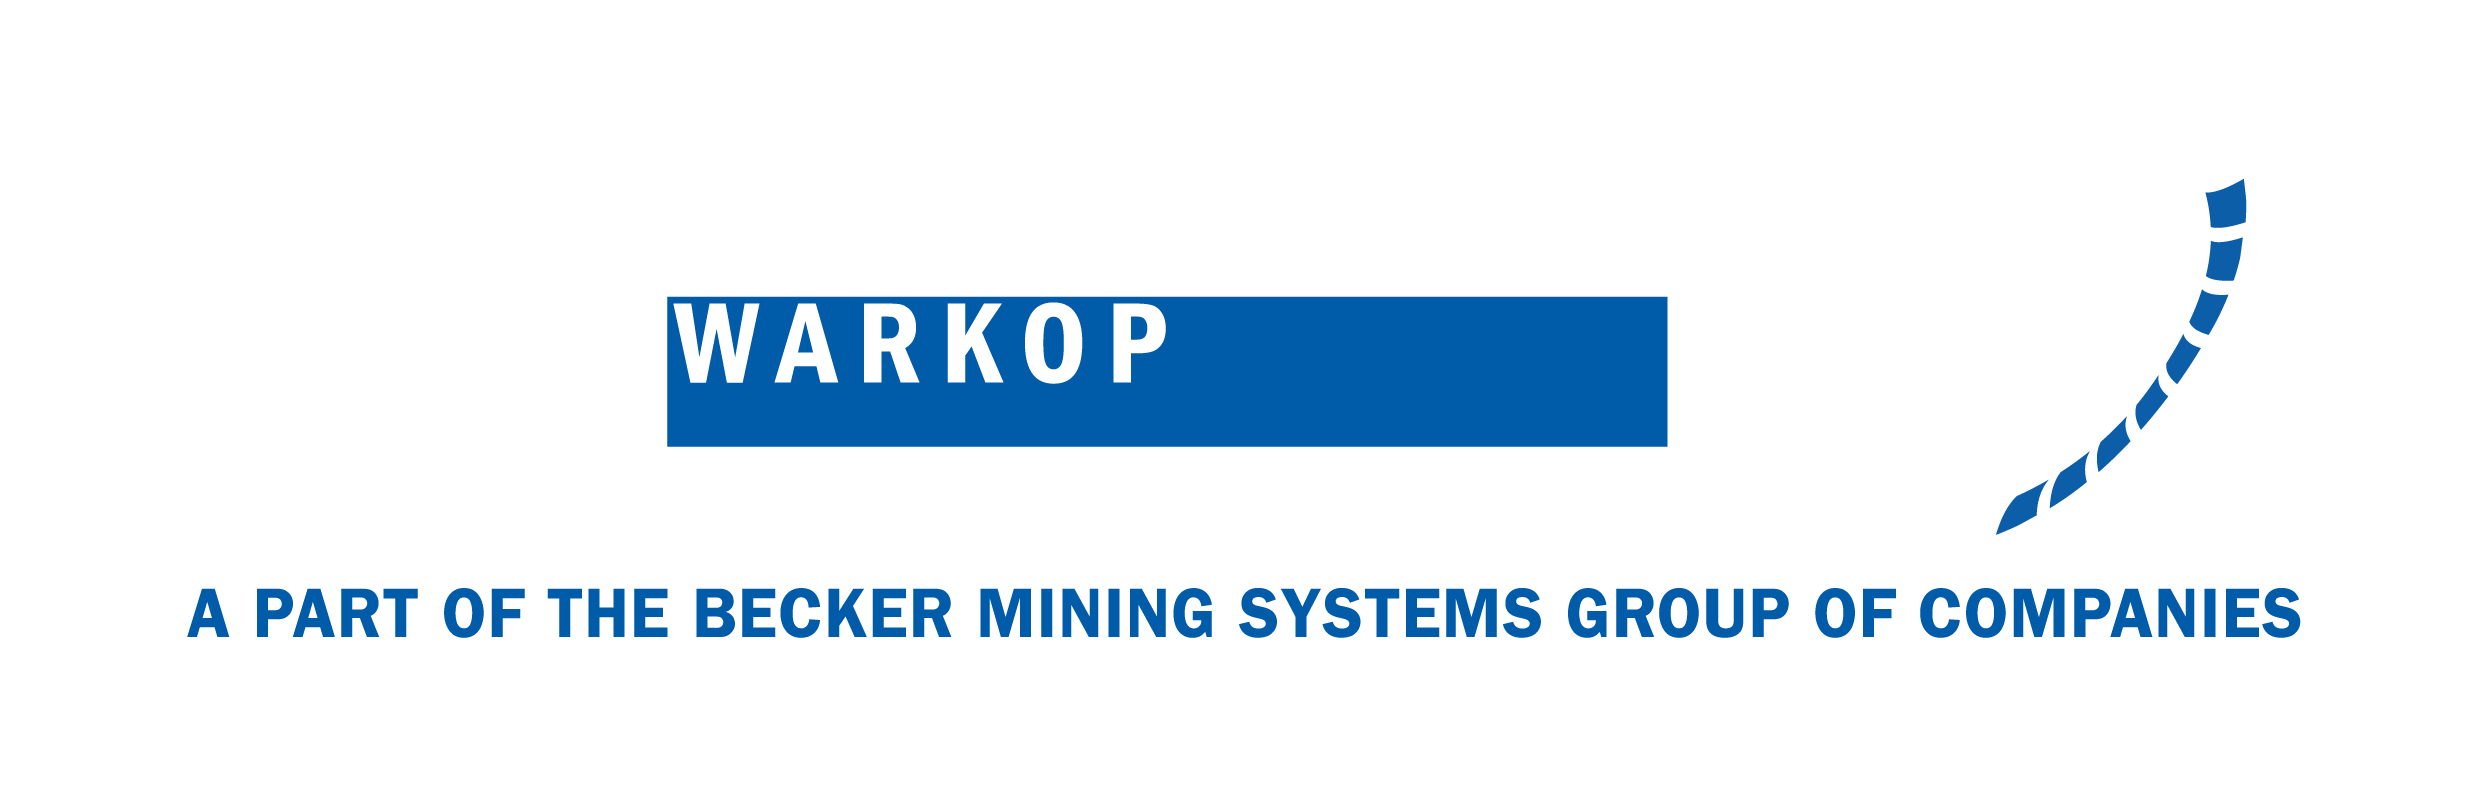 Cecker Warkop Systemy dla Górnictwa